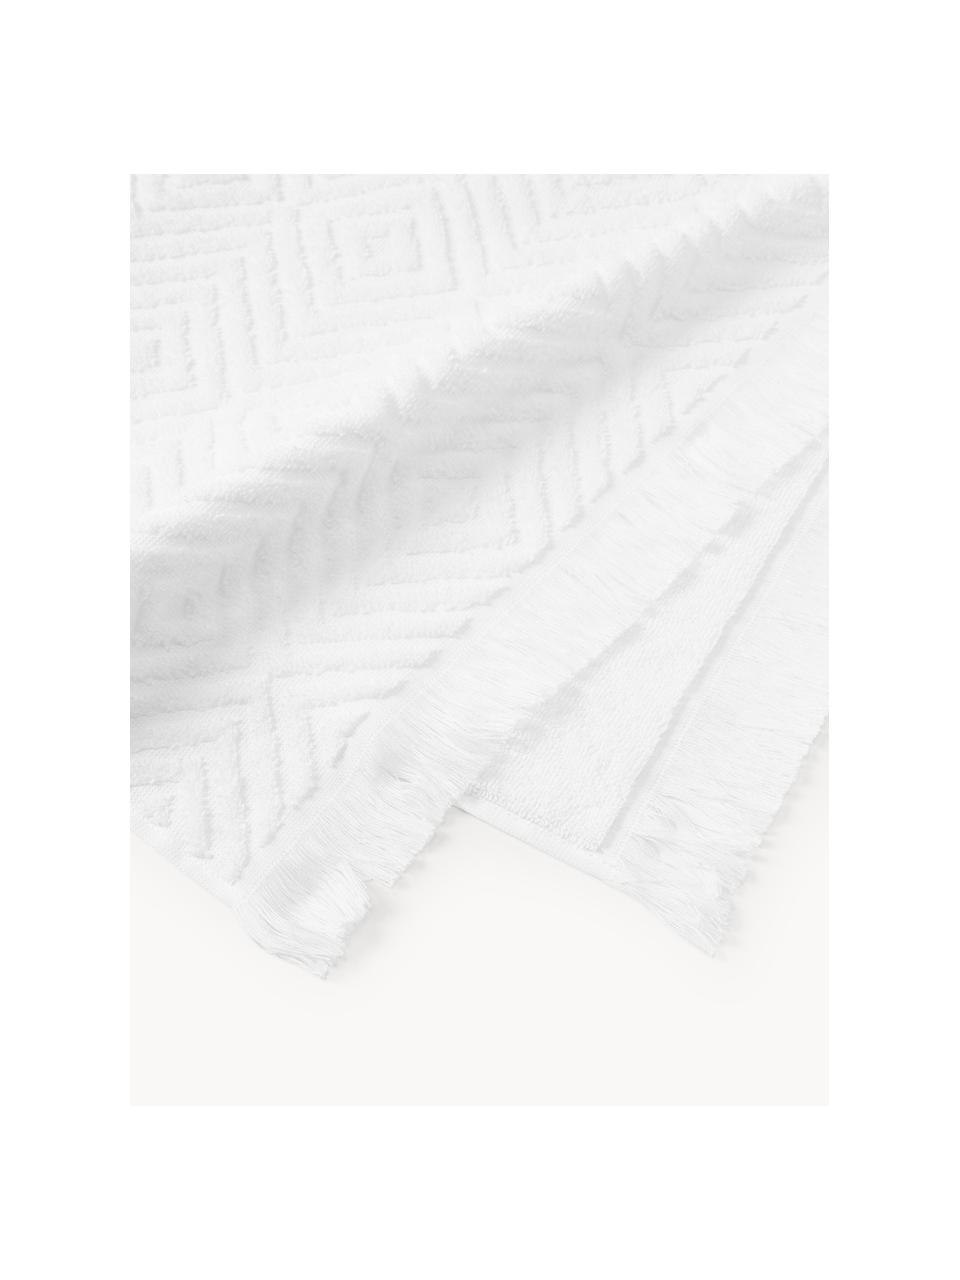 Handtuch-Set Jacqui mit Hoch-Tief-Muster, in verschiedenen Setgrößen, Weiß, 4er-Set (Handtuch & Duschtuch)